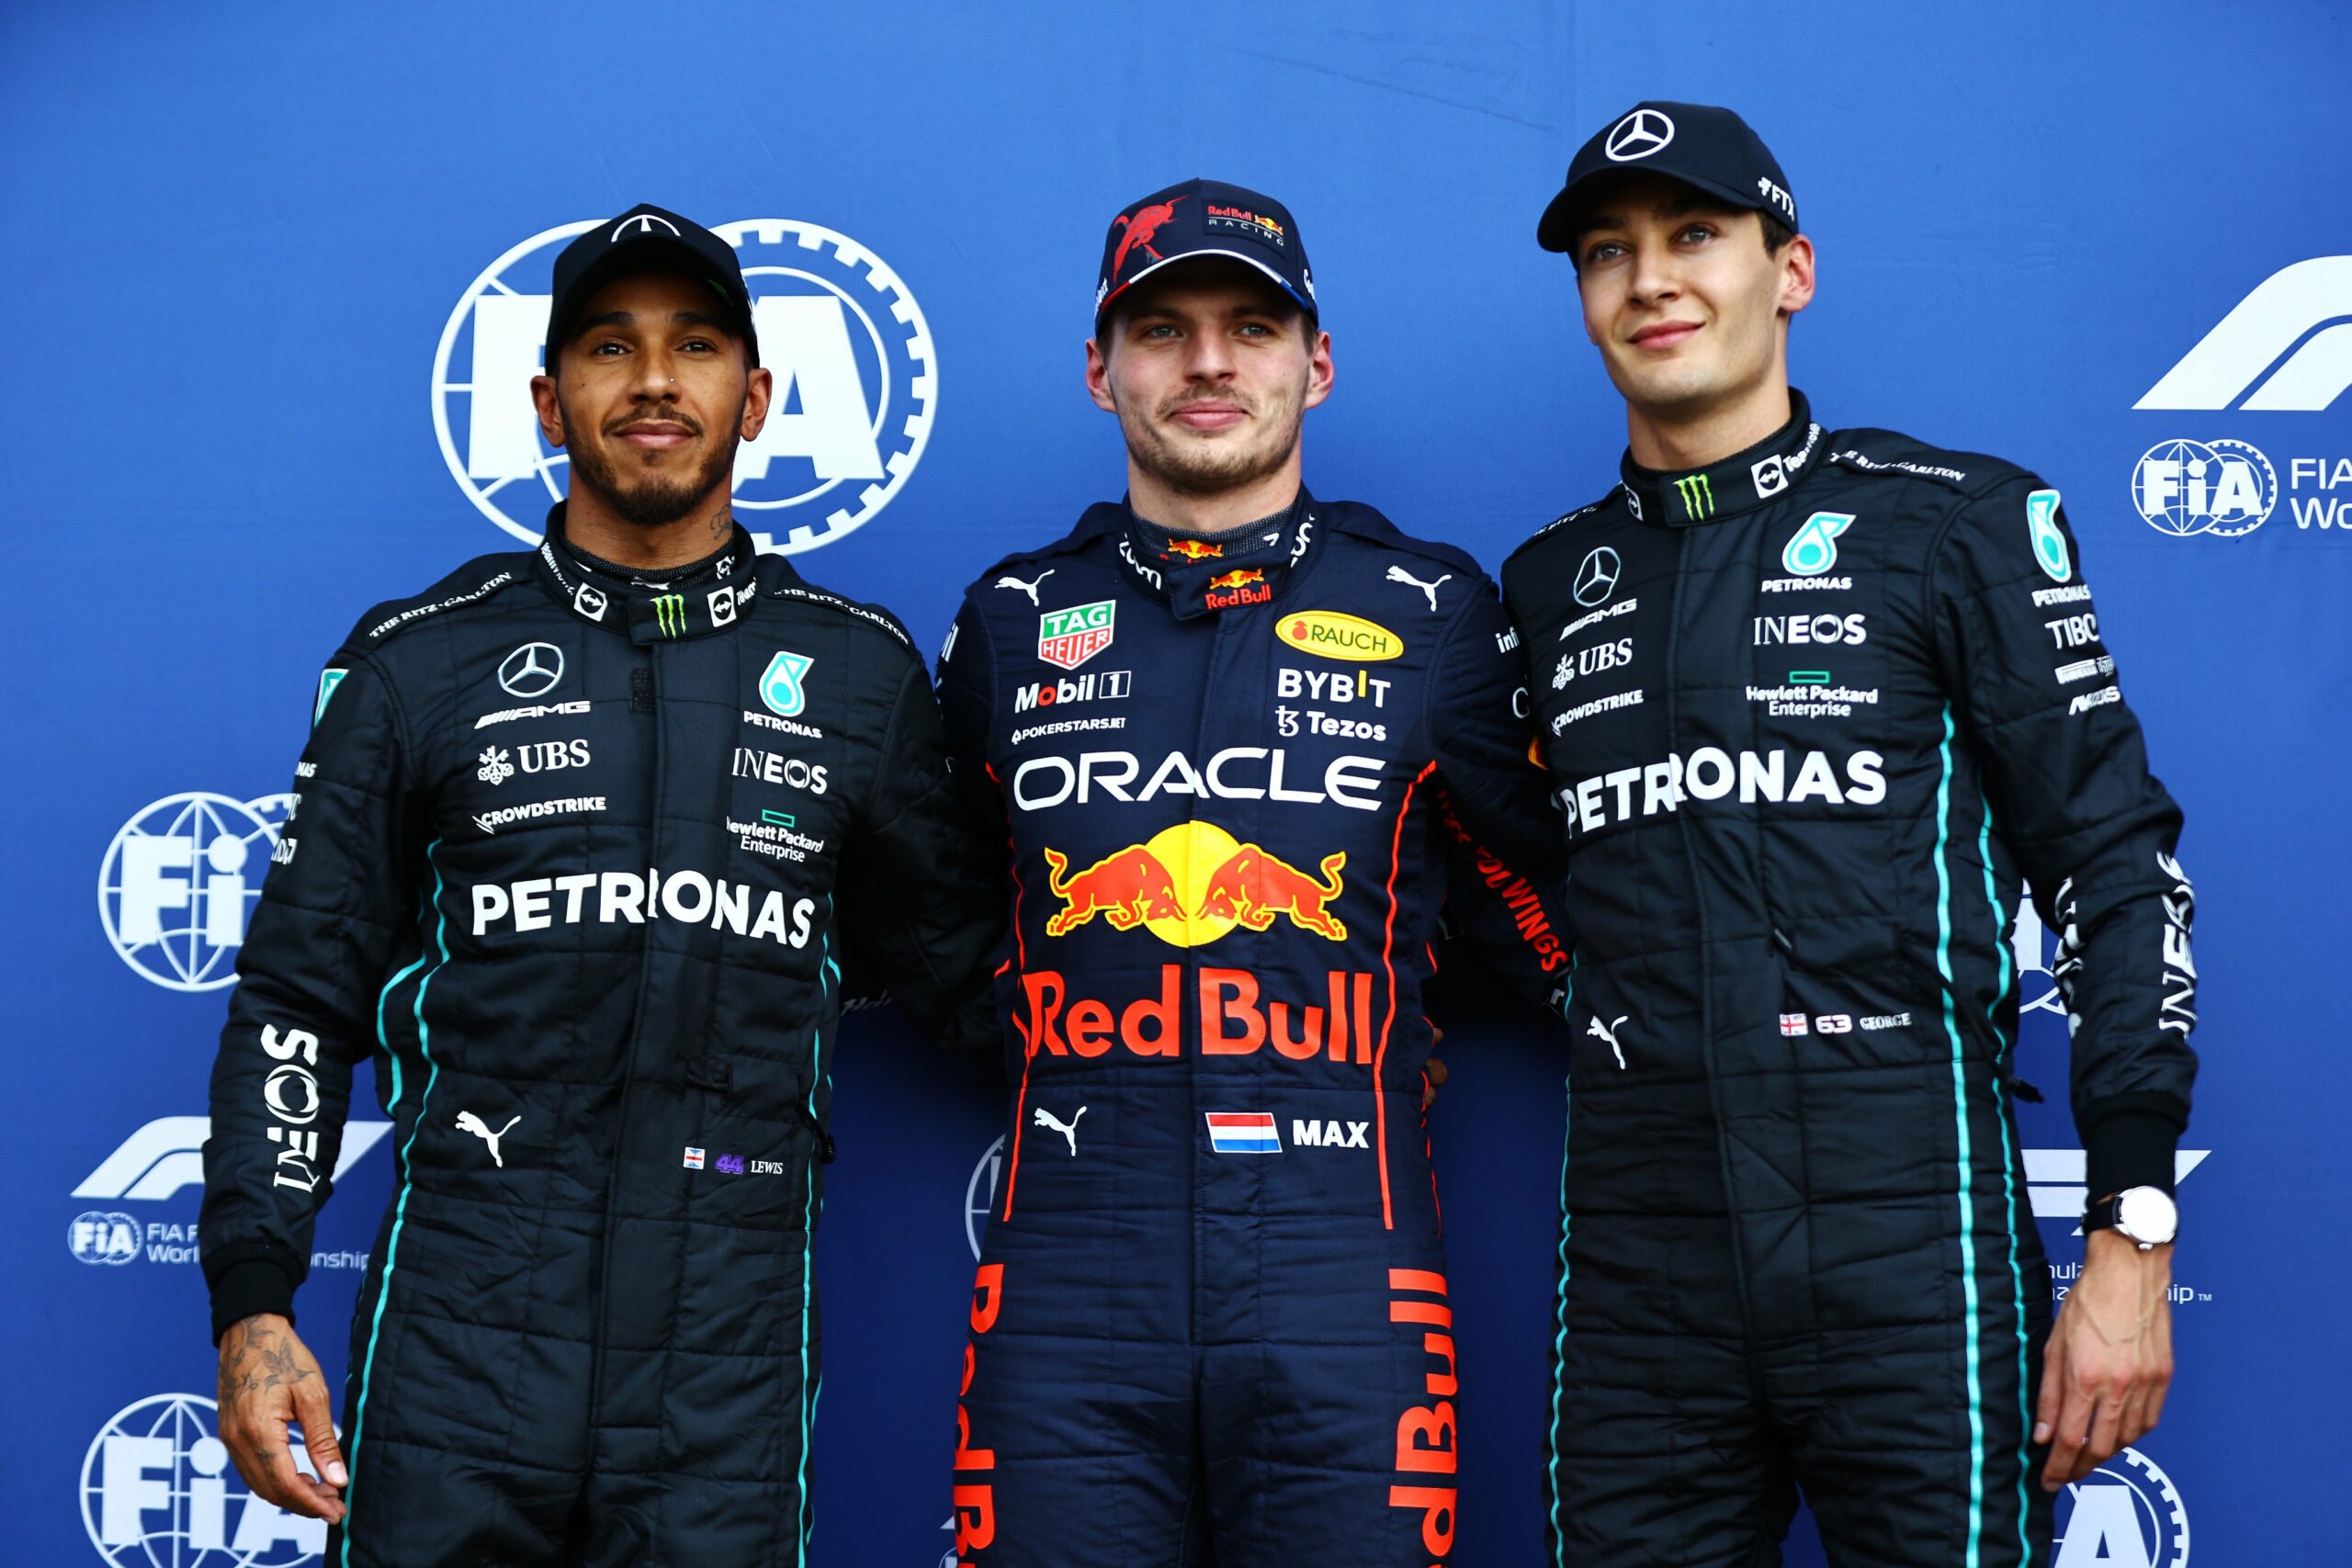 Fórmula 1: Max Verstappen se quedó con la pole en México